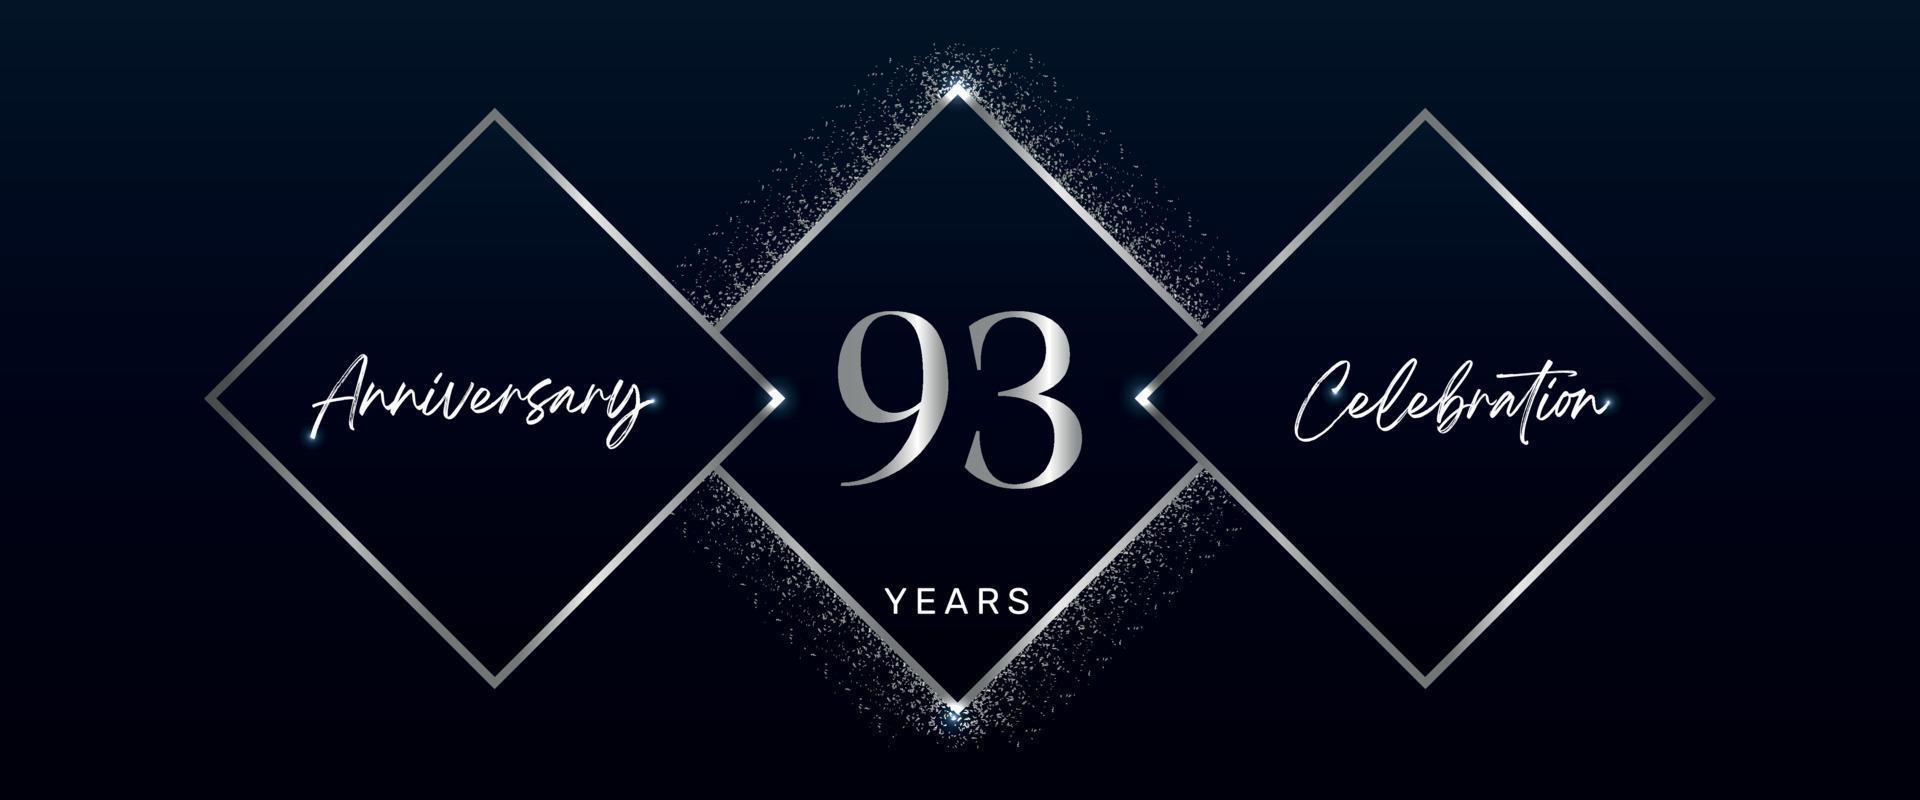 Logotipo de celebración de aniversario de 93 años. diseño vectorial para eventos de celebración de aniversario, fiesta de cumpleaños, tarjeta de felicitación, boda, tarjeta de invitación. vector de diseño de plantilla de aniversario de 93 años